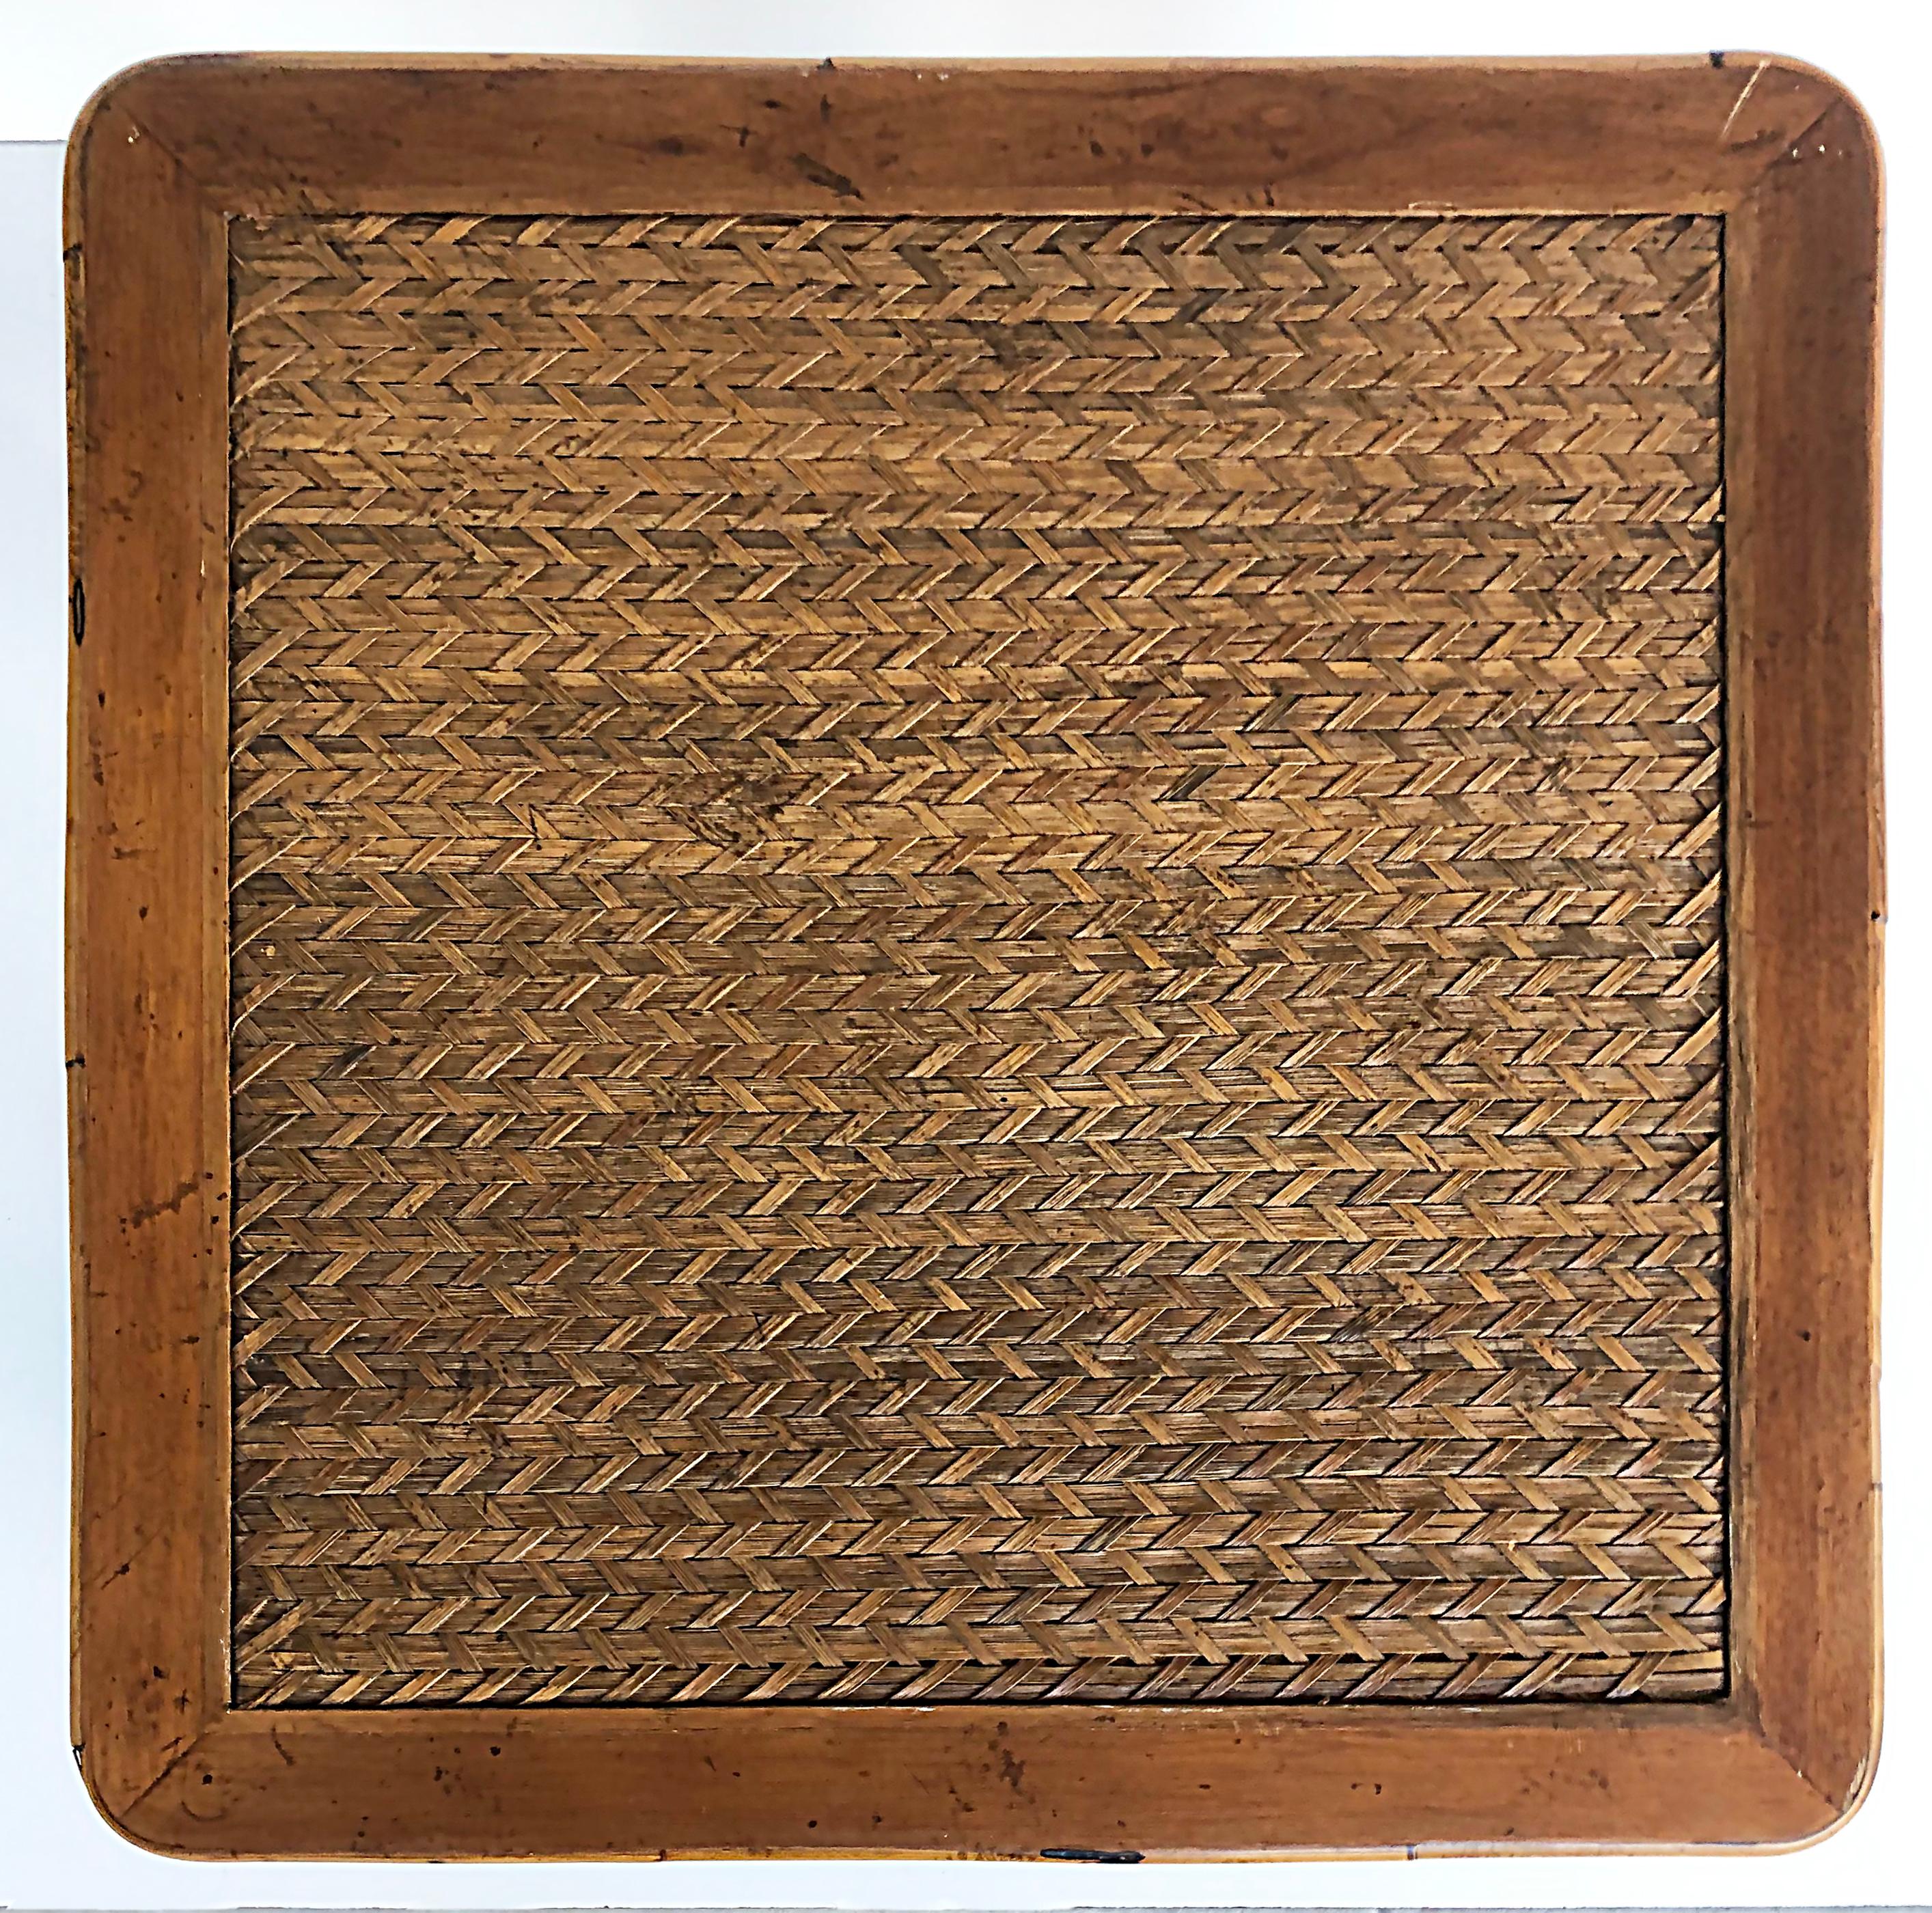 Table d'appoint en bambou, rotin et roseau, attribuée à Maitland Smith

Nous proposons à la vente une table en bambou attribuée à Maitland Smith, avec un plateau en roseau tressé, des fixations en rotin et des pieds en bambou. Le dessous de la table